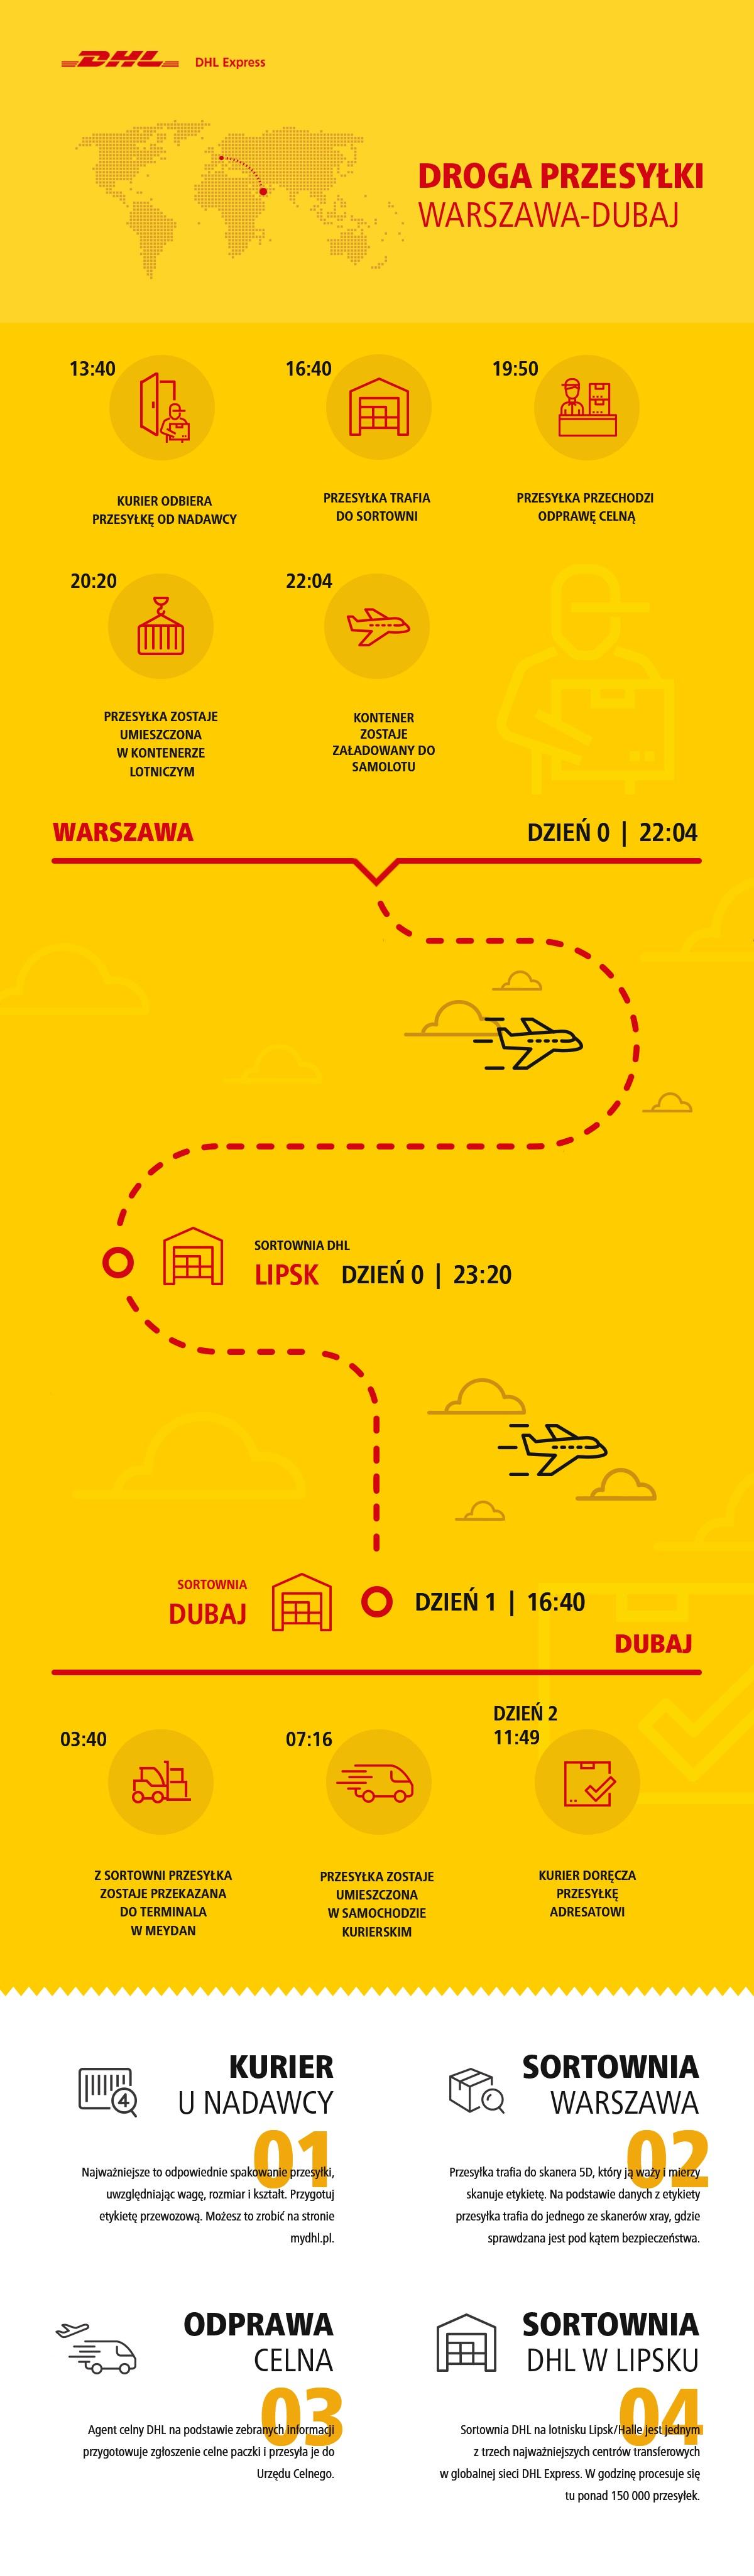 Przesyłka do Dubaju. Z infografiki dowiesz się jak wygląda podróż międzynarodowej przesyłki wysłanej z Warszawa do Dubaju.